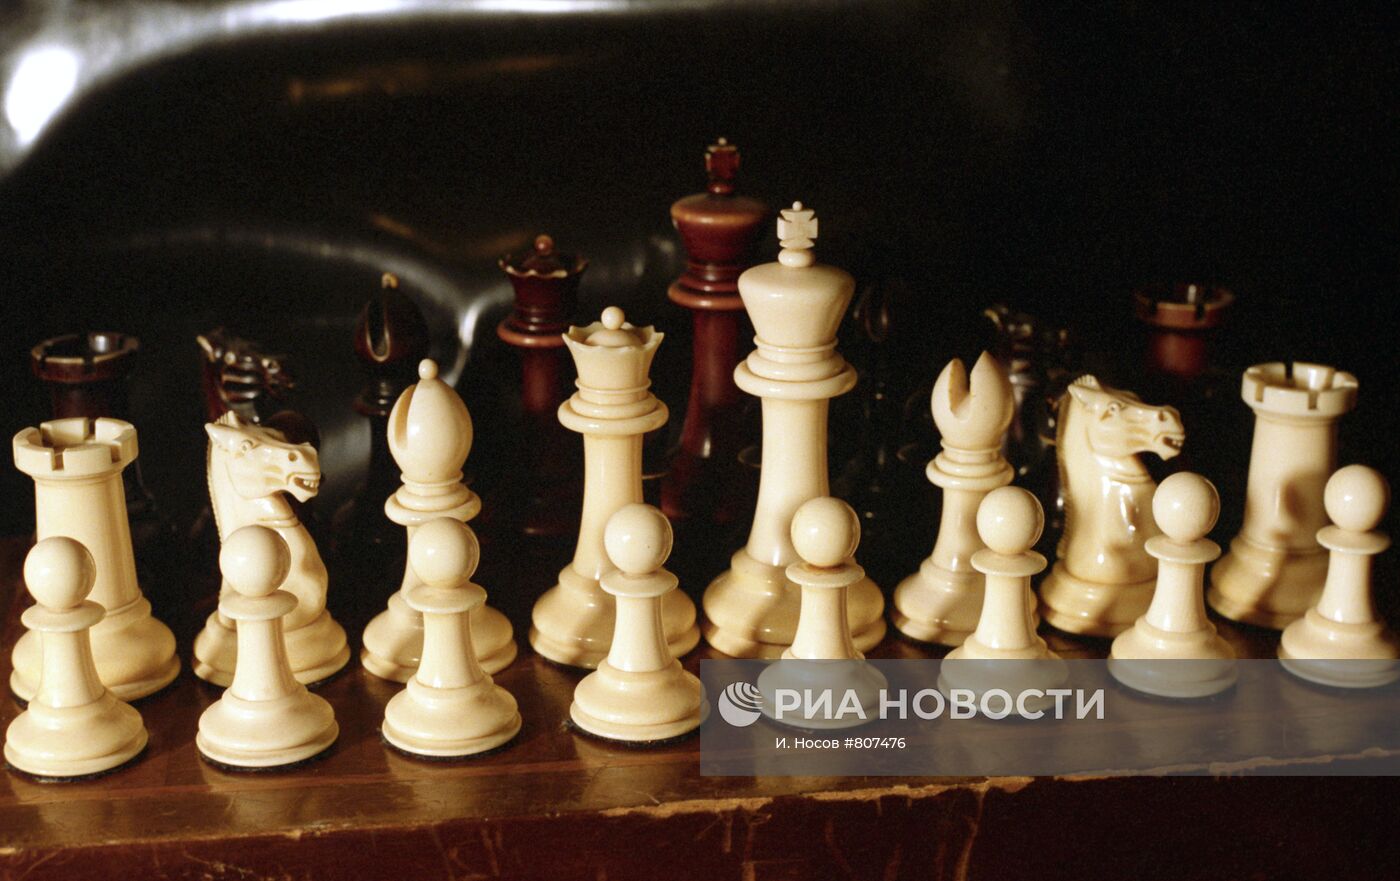 Шахматы, изготовленные в Лондонской королевской мастерской